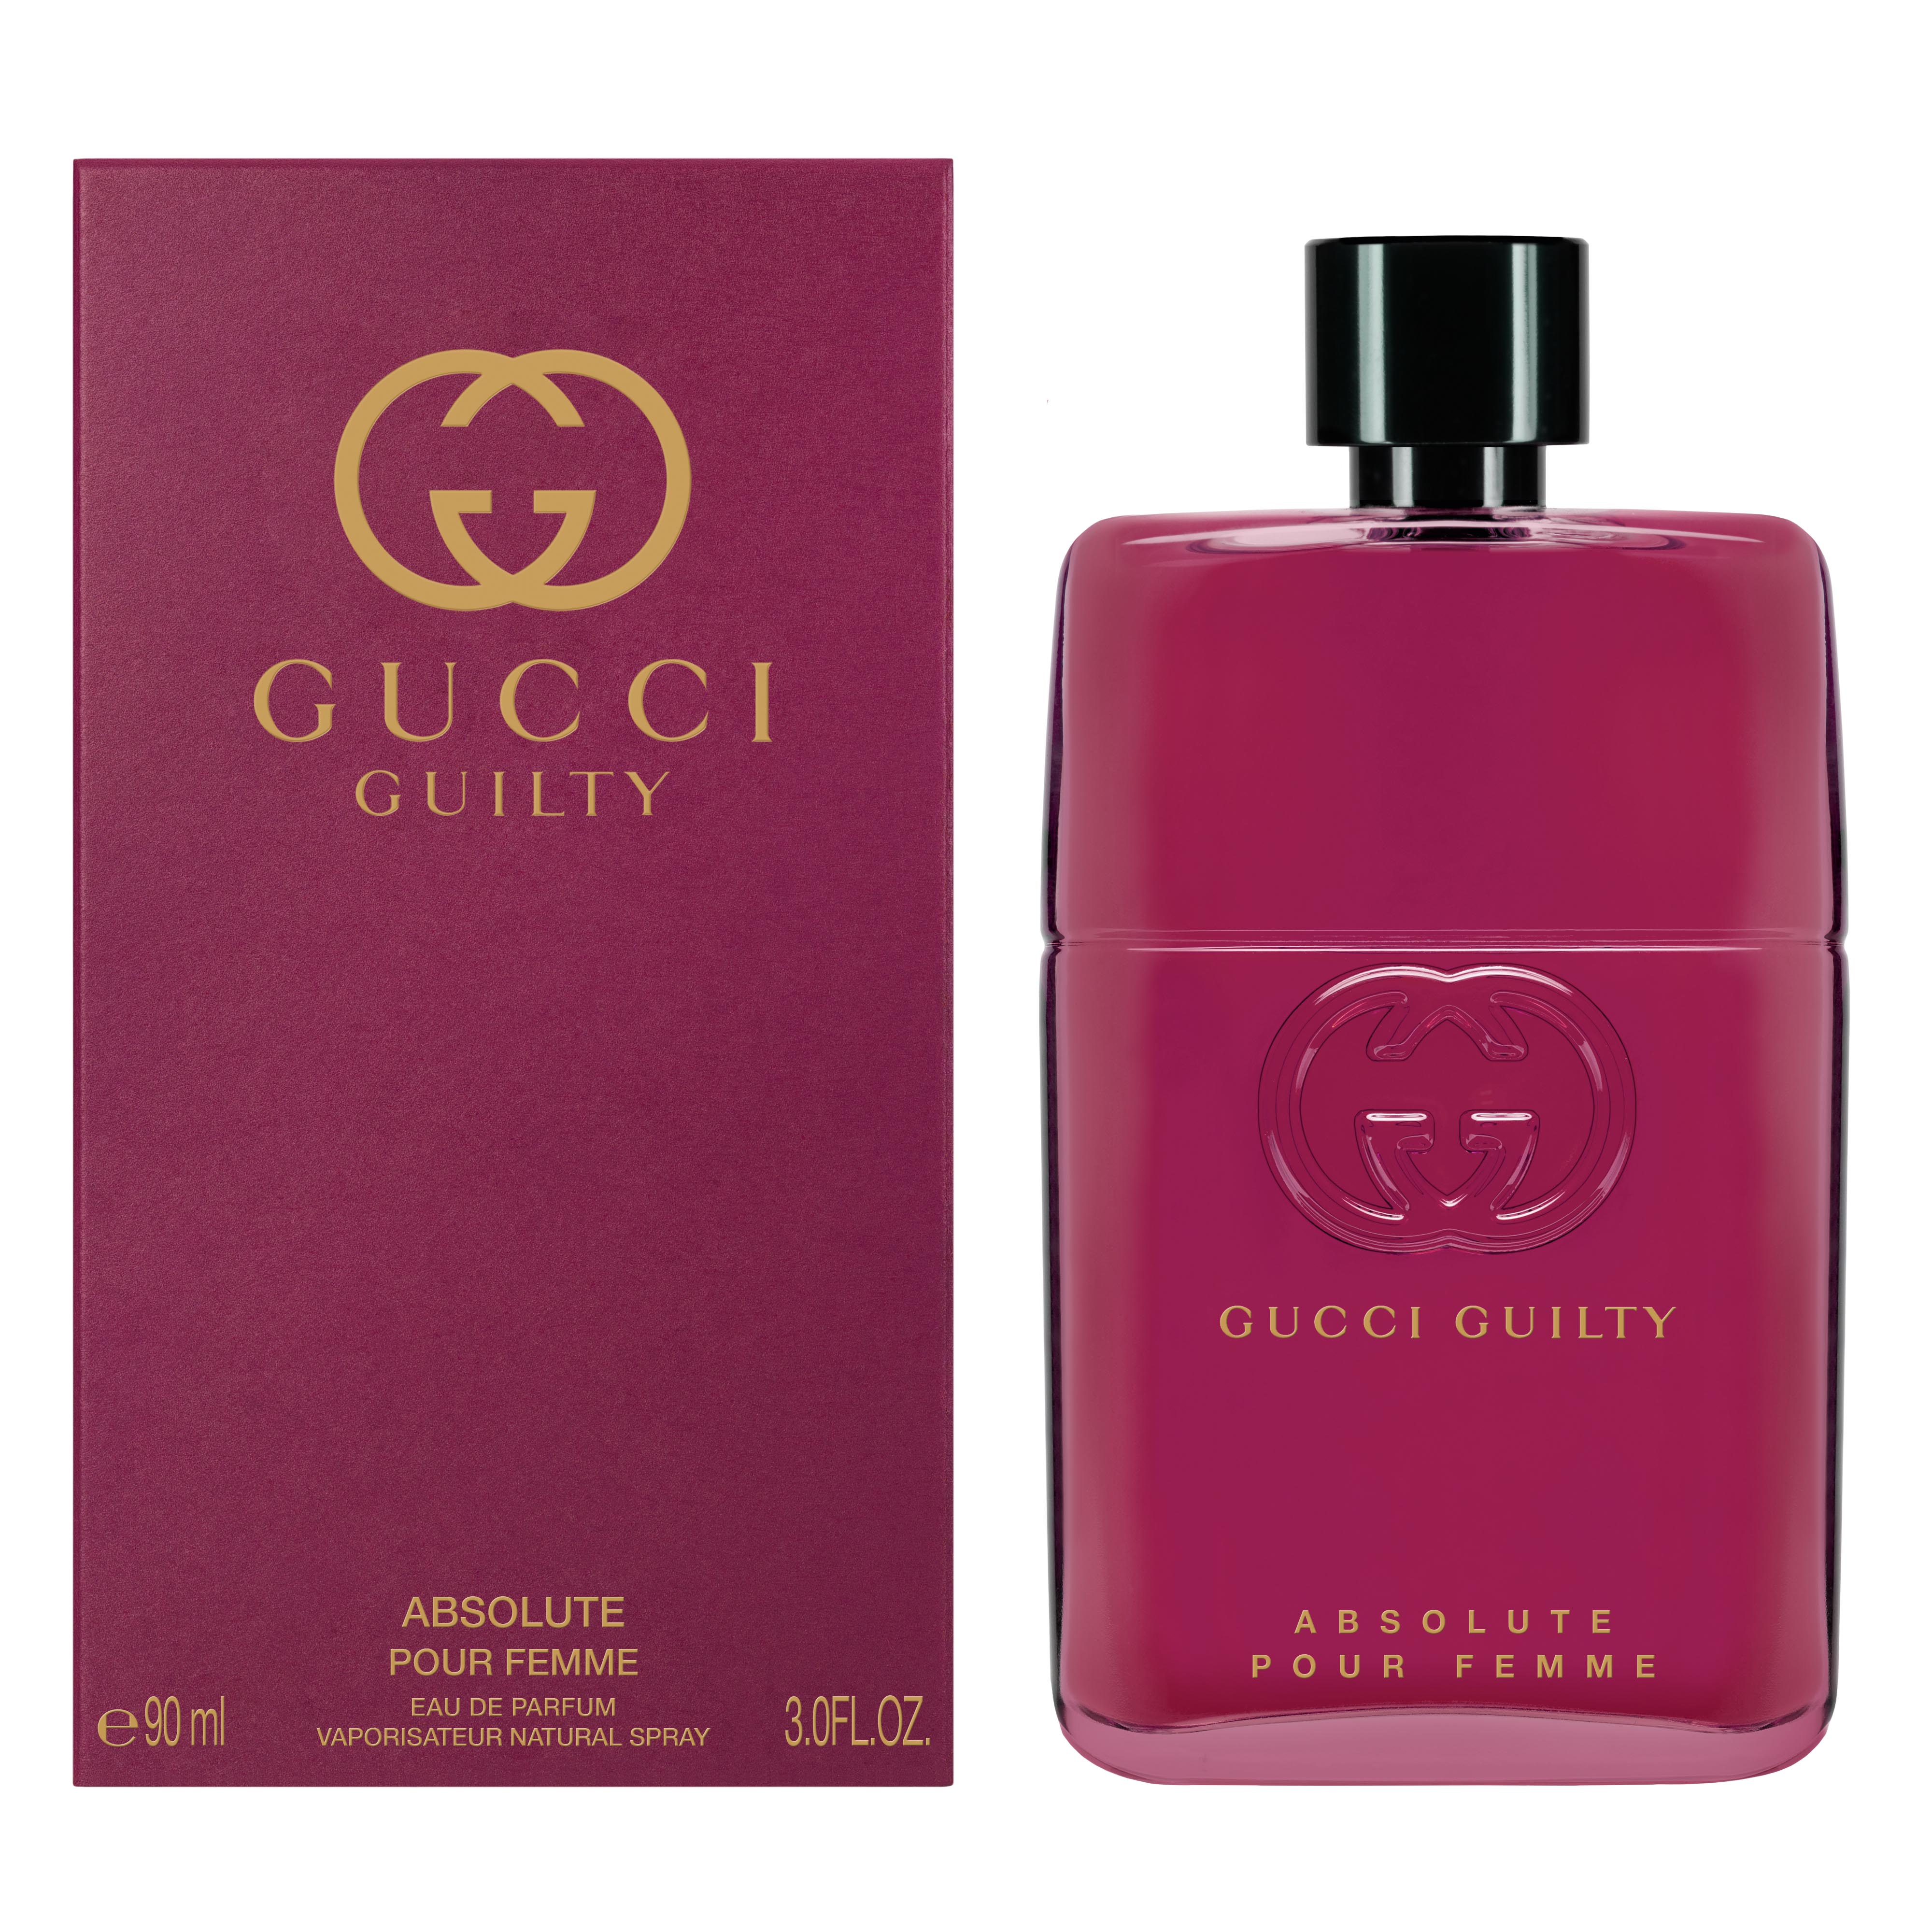 Gucci - bestil lækker Gucci parfume i FREE-butikken